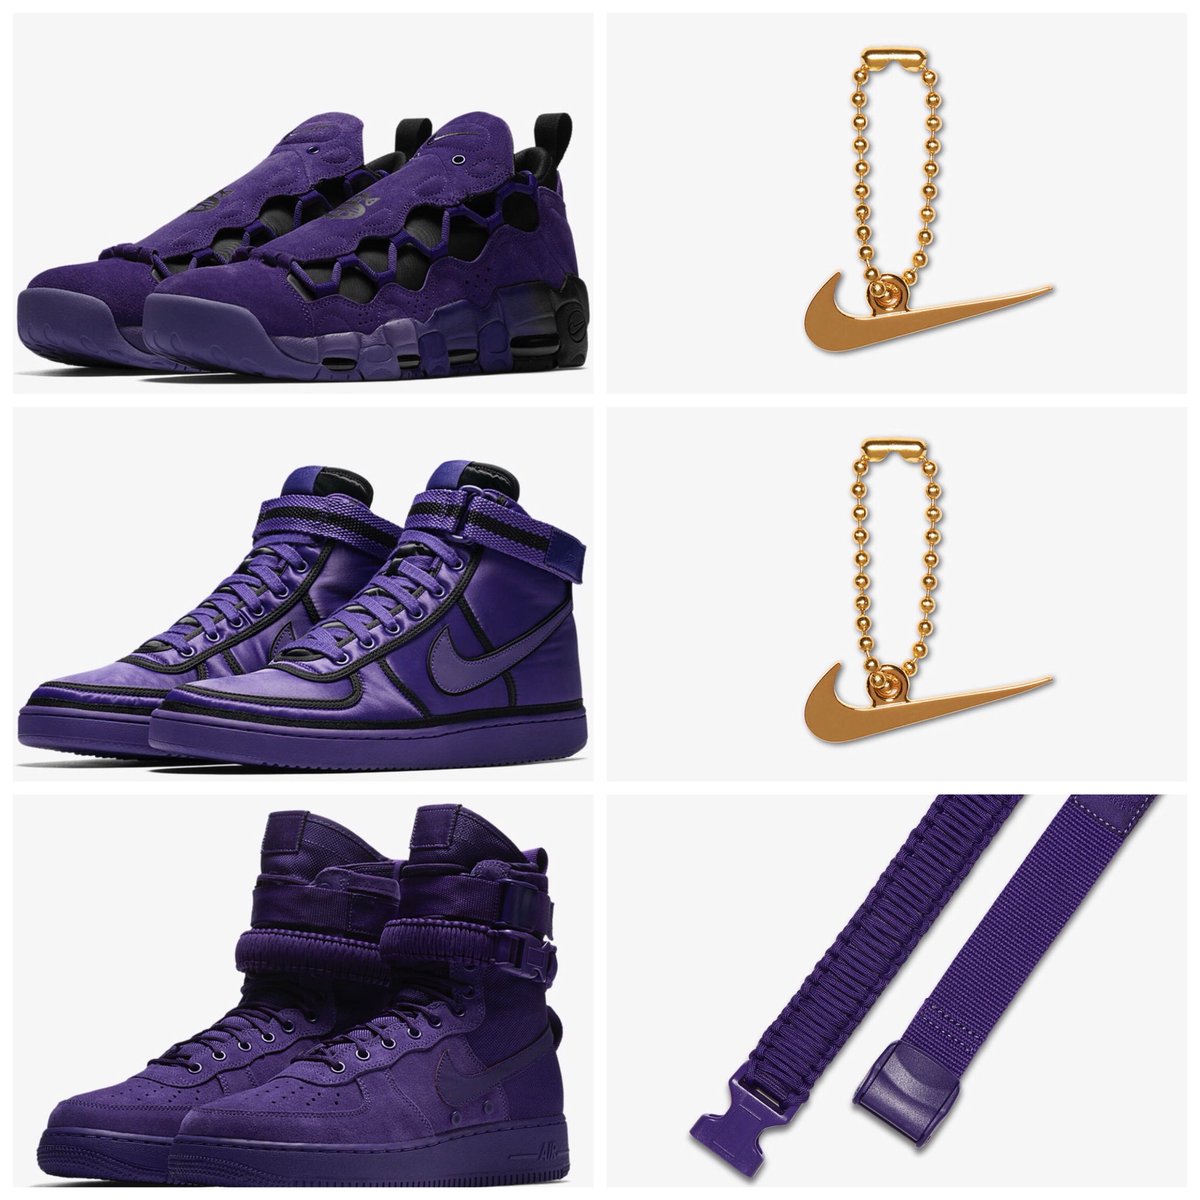 Money QS “Court Purple” Vandal 